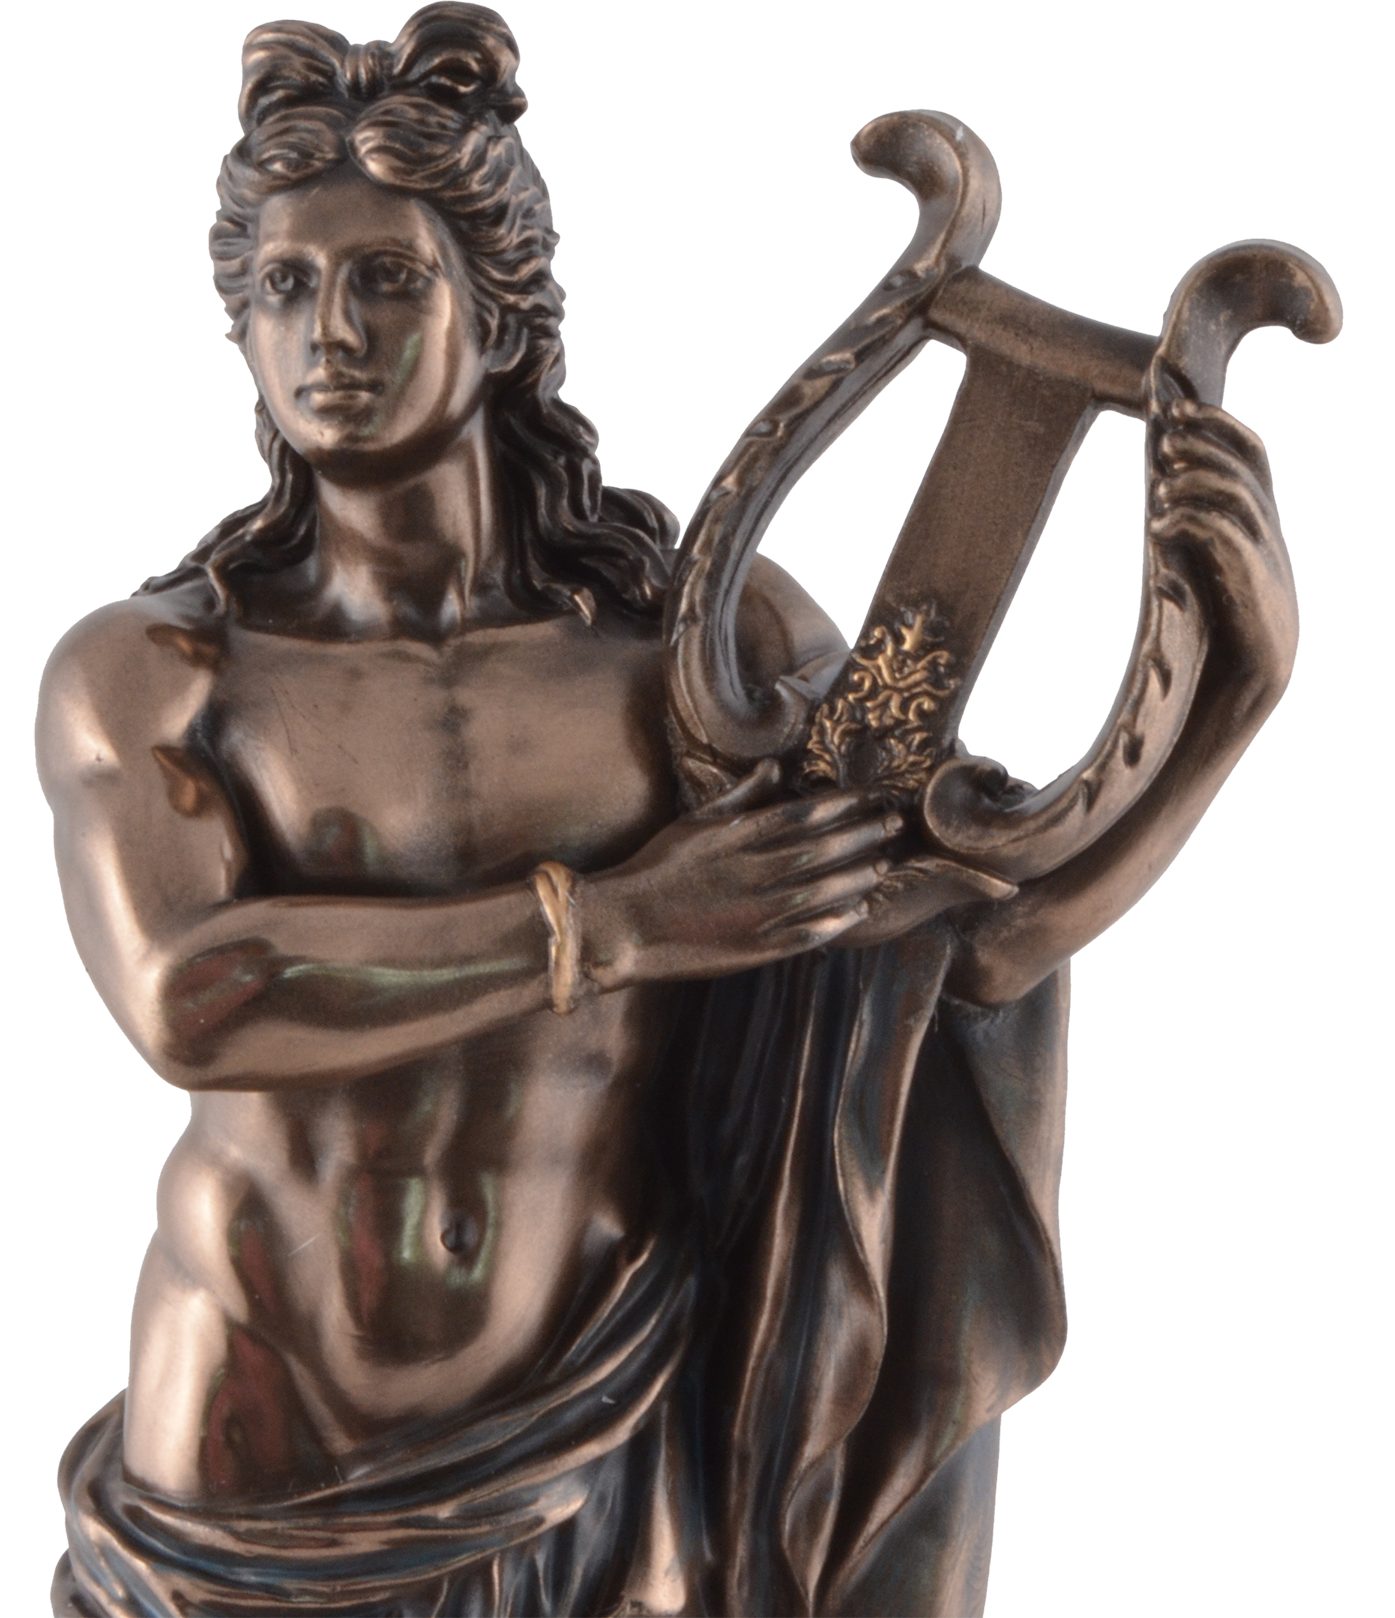 bronziert/coloriert, Dekofigur 7x5x16cm ca. Griechischer Gott Veronesedesign, L/B/H Größe: Apollo, Gmbh Vogler direct